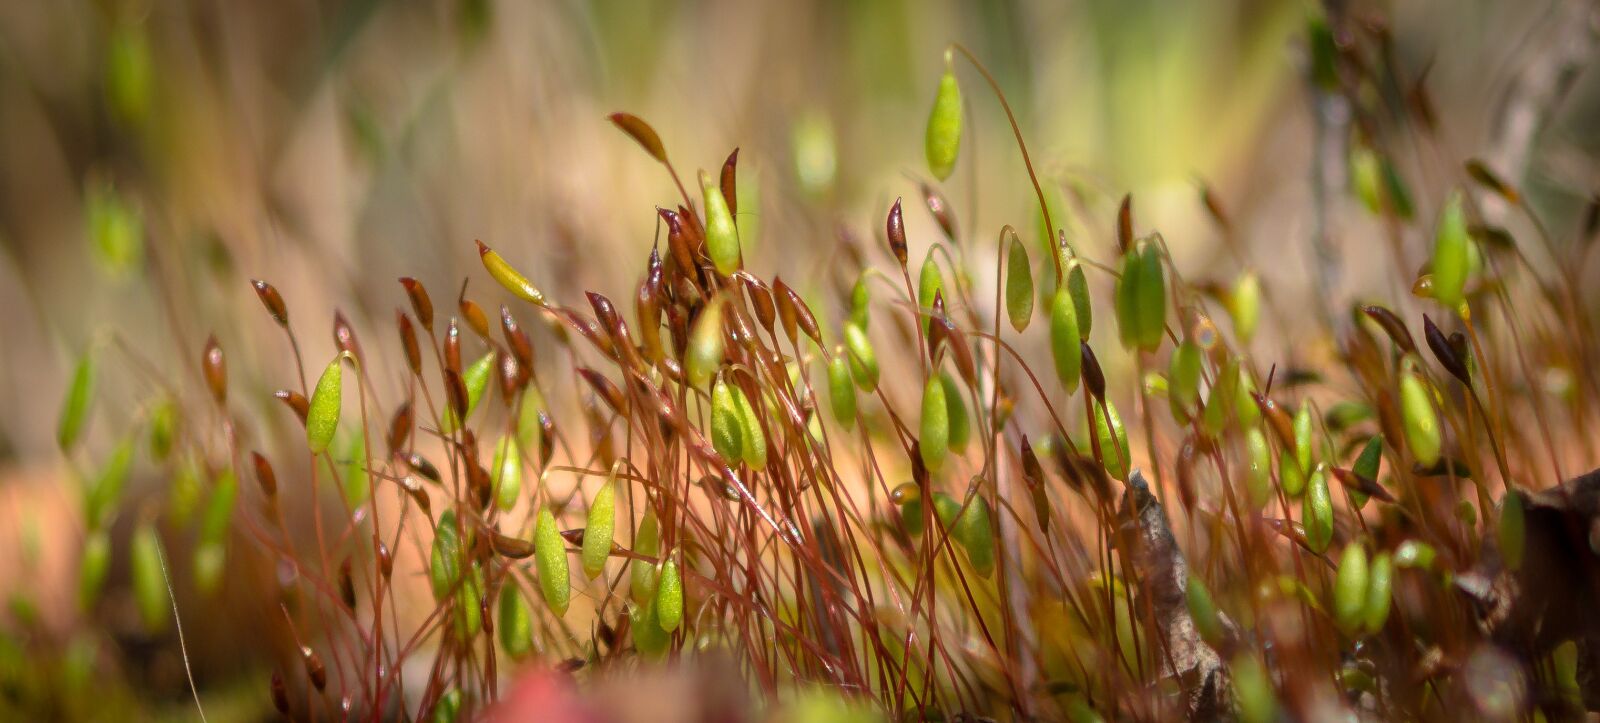 Pentax K-S2 sample photo. Moss, moss flower, green photography